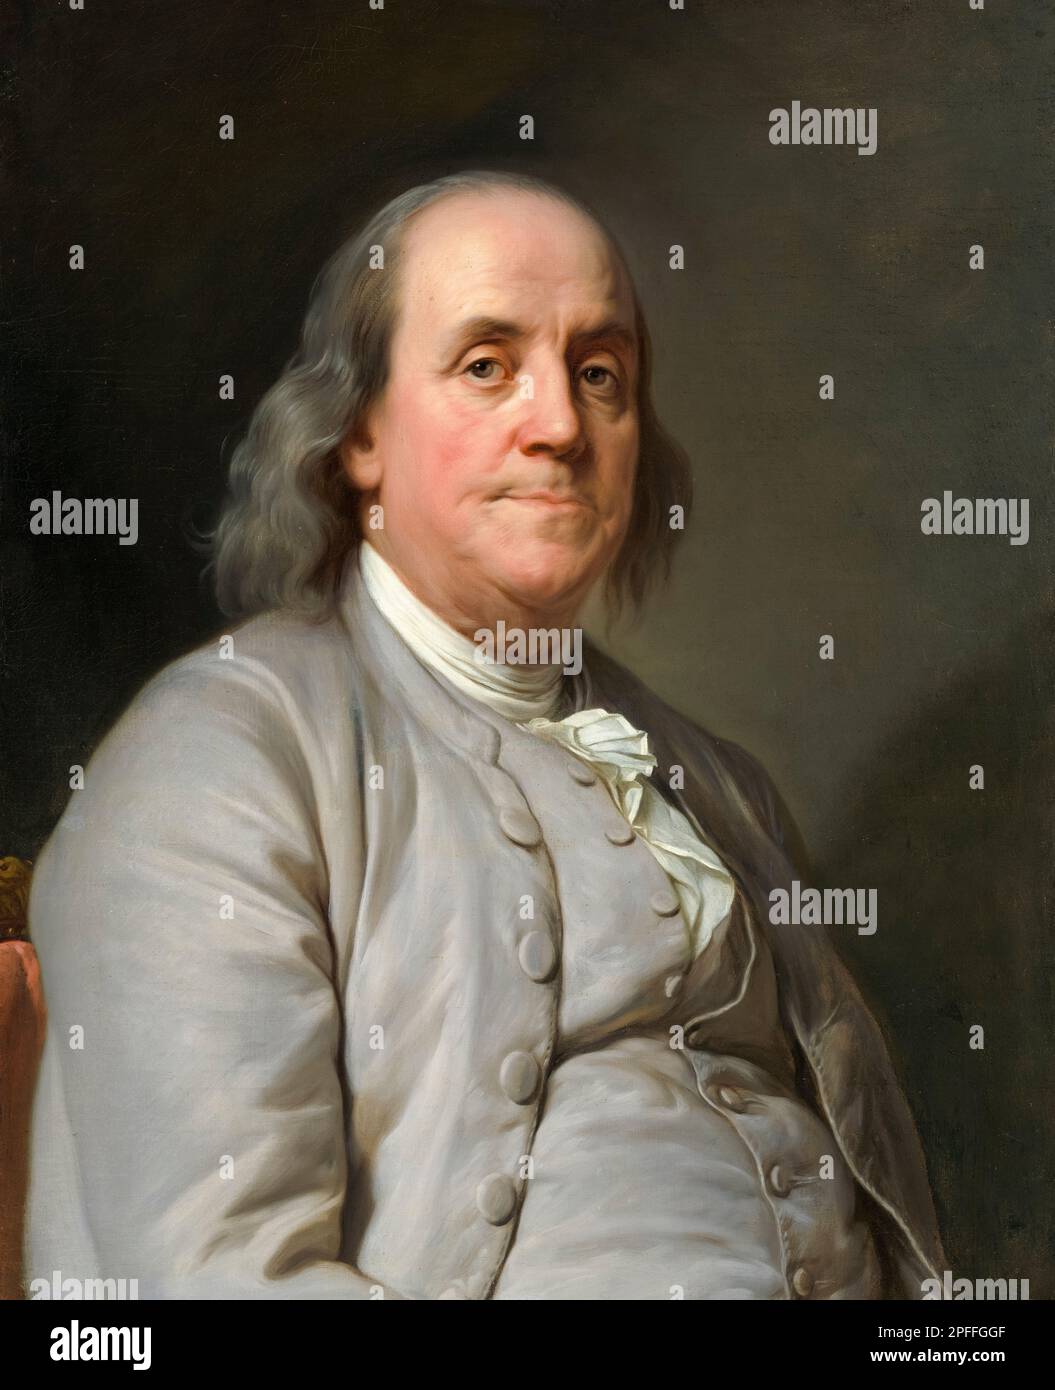 Benjamin Franklin (1706-1790), amerikanische Polymathematik, Schriftsteller, Wissenschaftler, Erfinder, Und Staatsmann. Einer der Gründerväter der Vereinigten Staaten, Porträt in Öl auf Leinwand von Joseph Siffred Duplessis, ca. 1785 Stockfoto